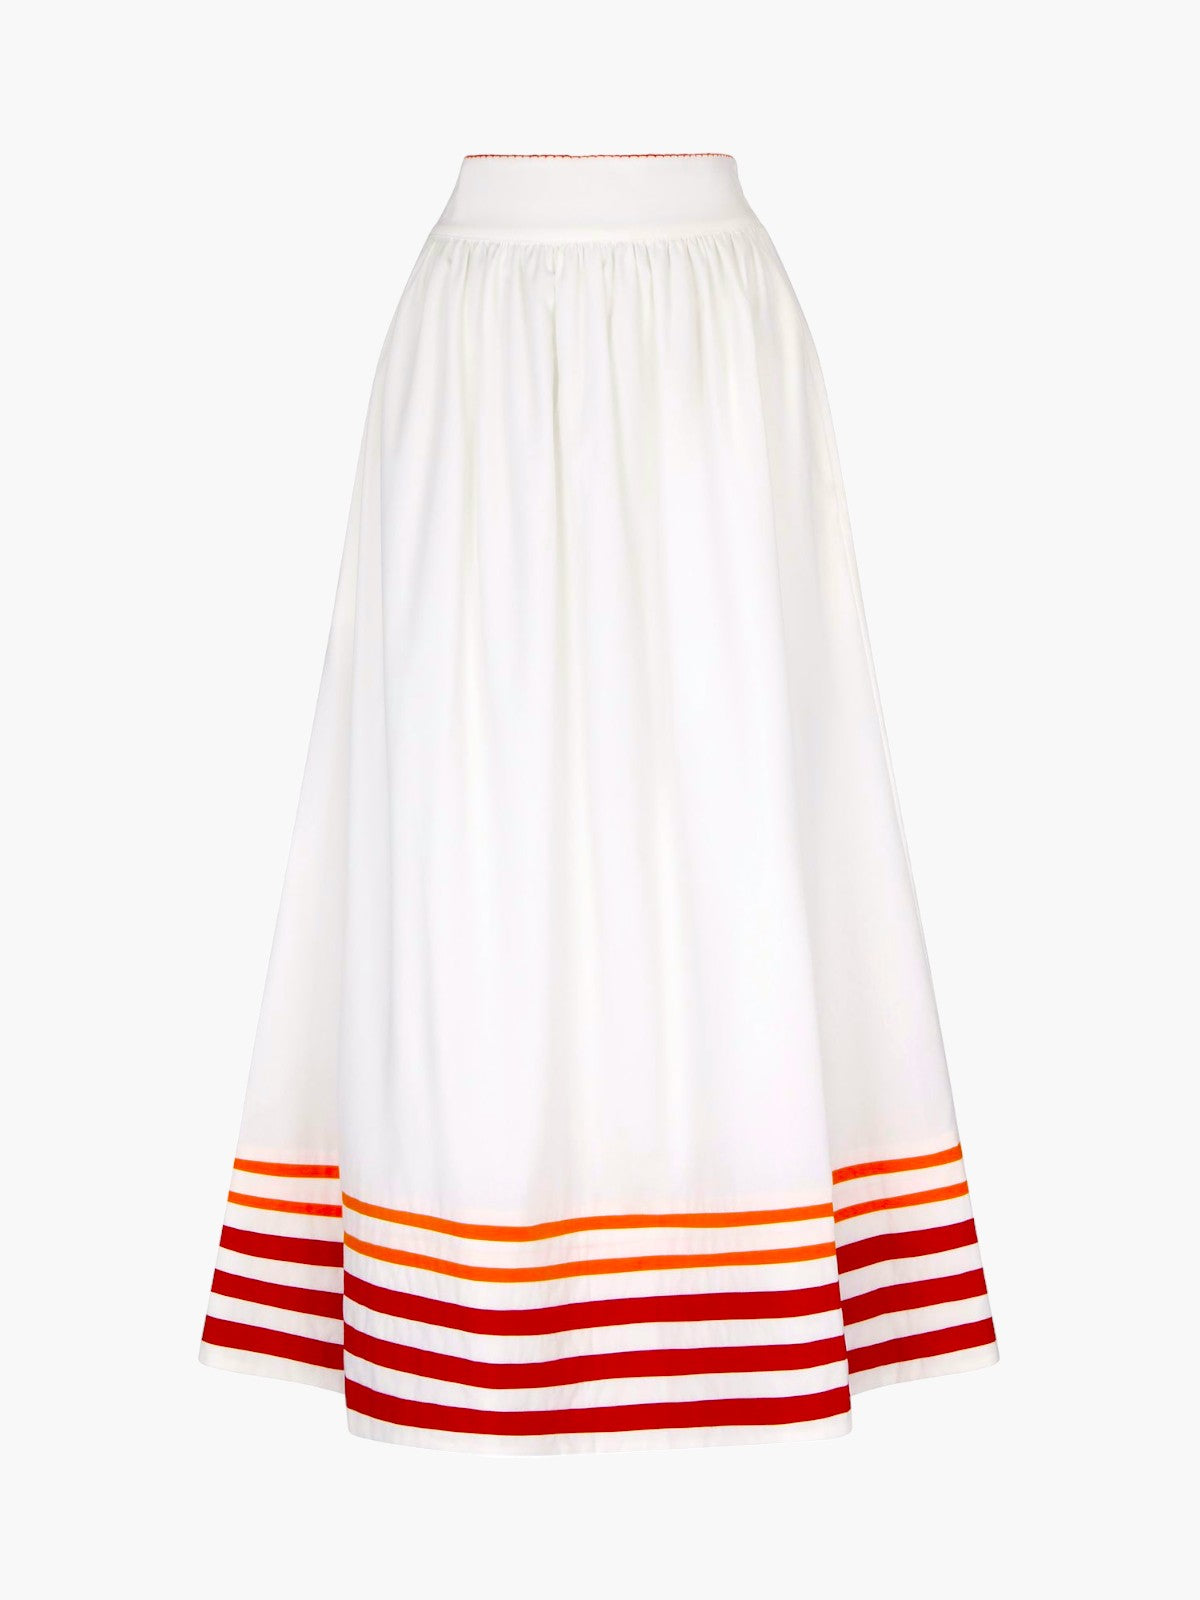 Encantada Skirt | Tangerine